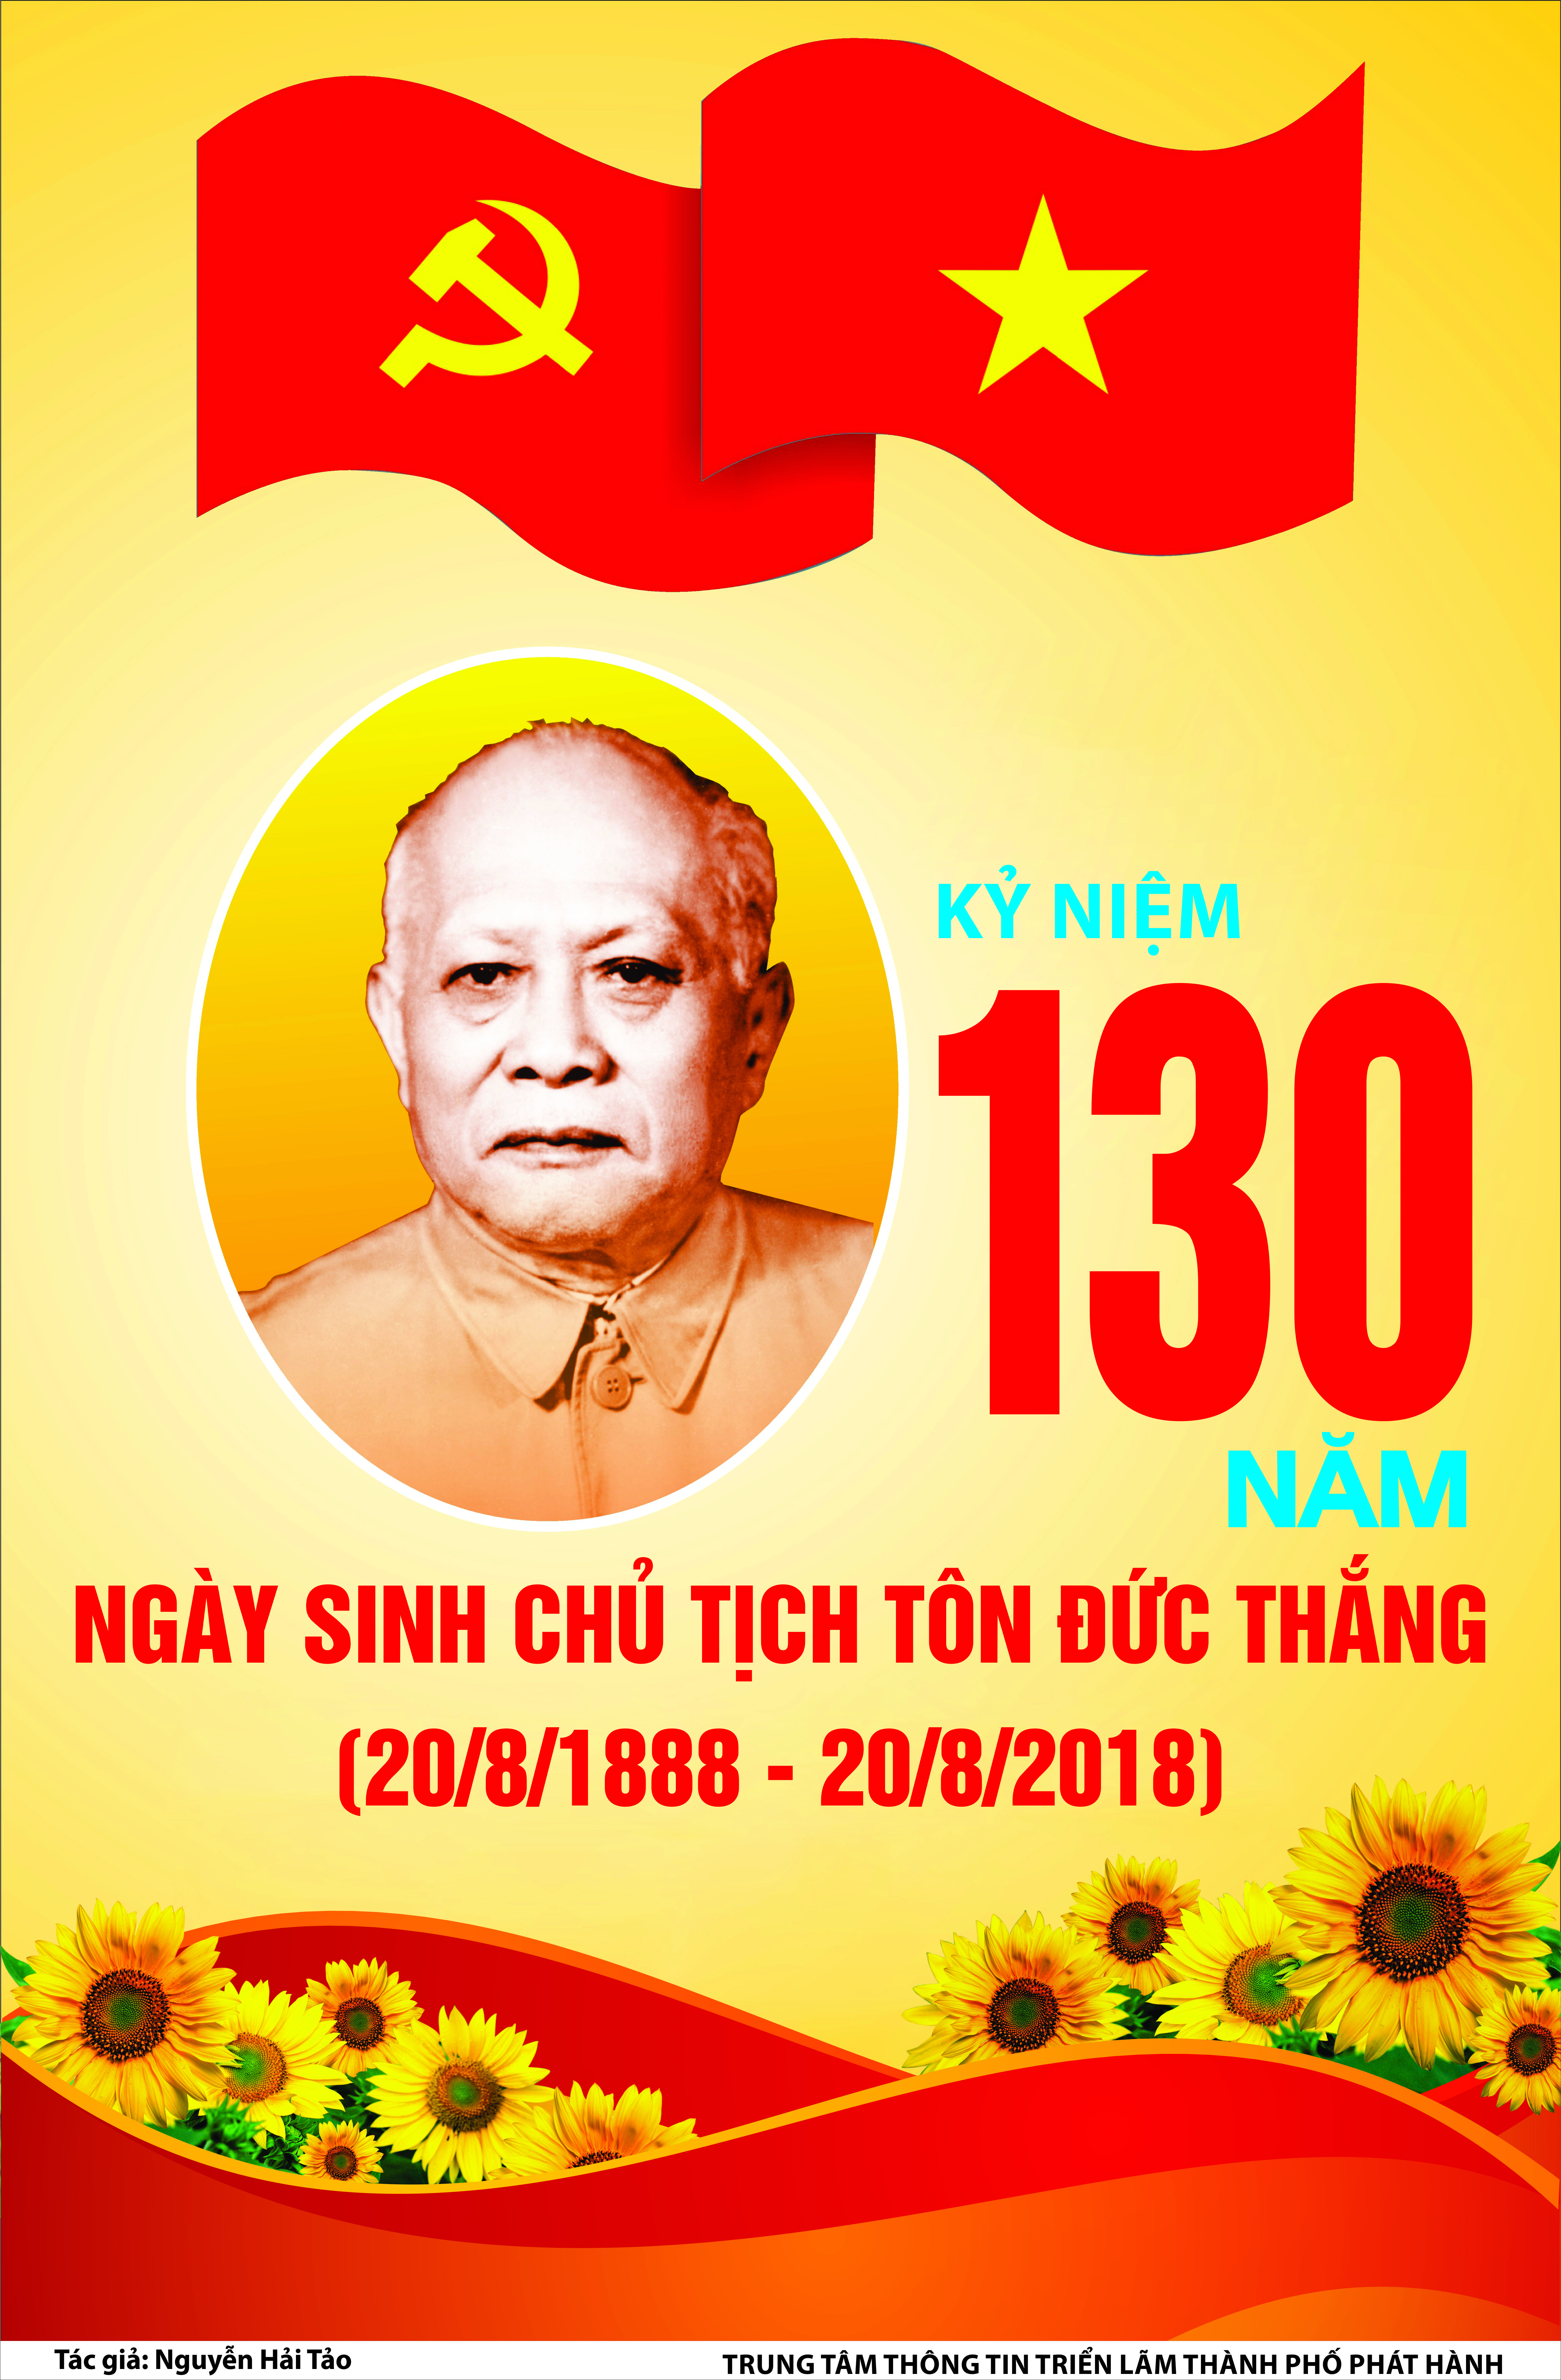 Tuyên truyền kỷ niệm 130 năm ngày sinh chủ tịch Tôn Đức Thắng (20/8/1888 - 20/8/2018)